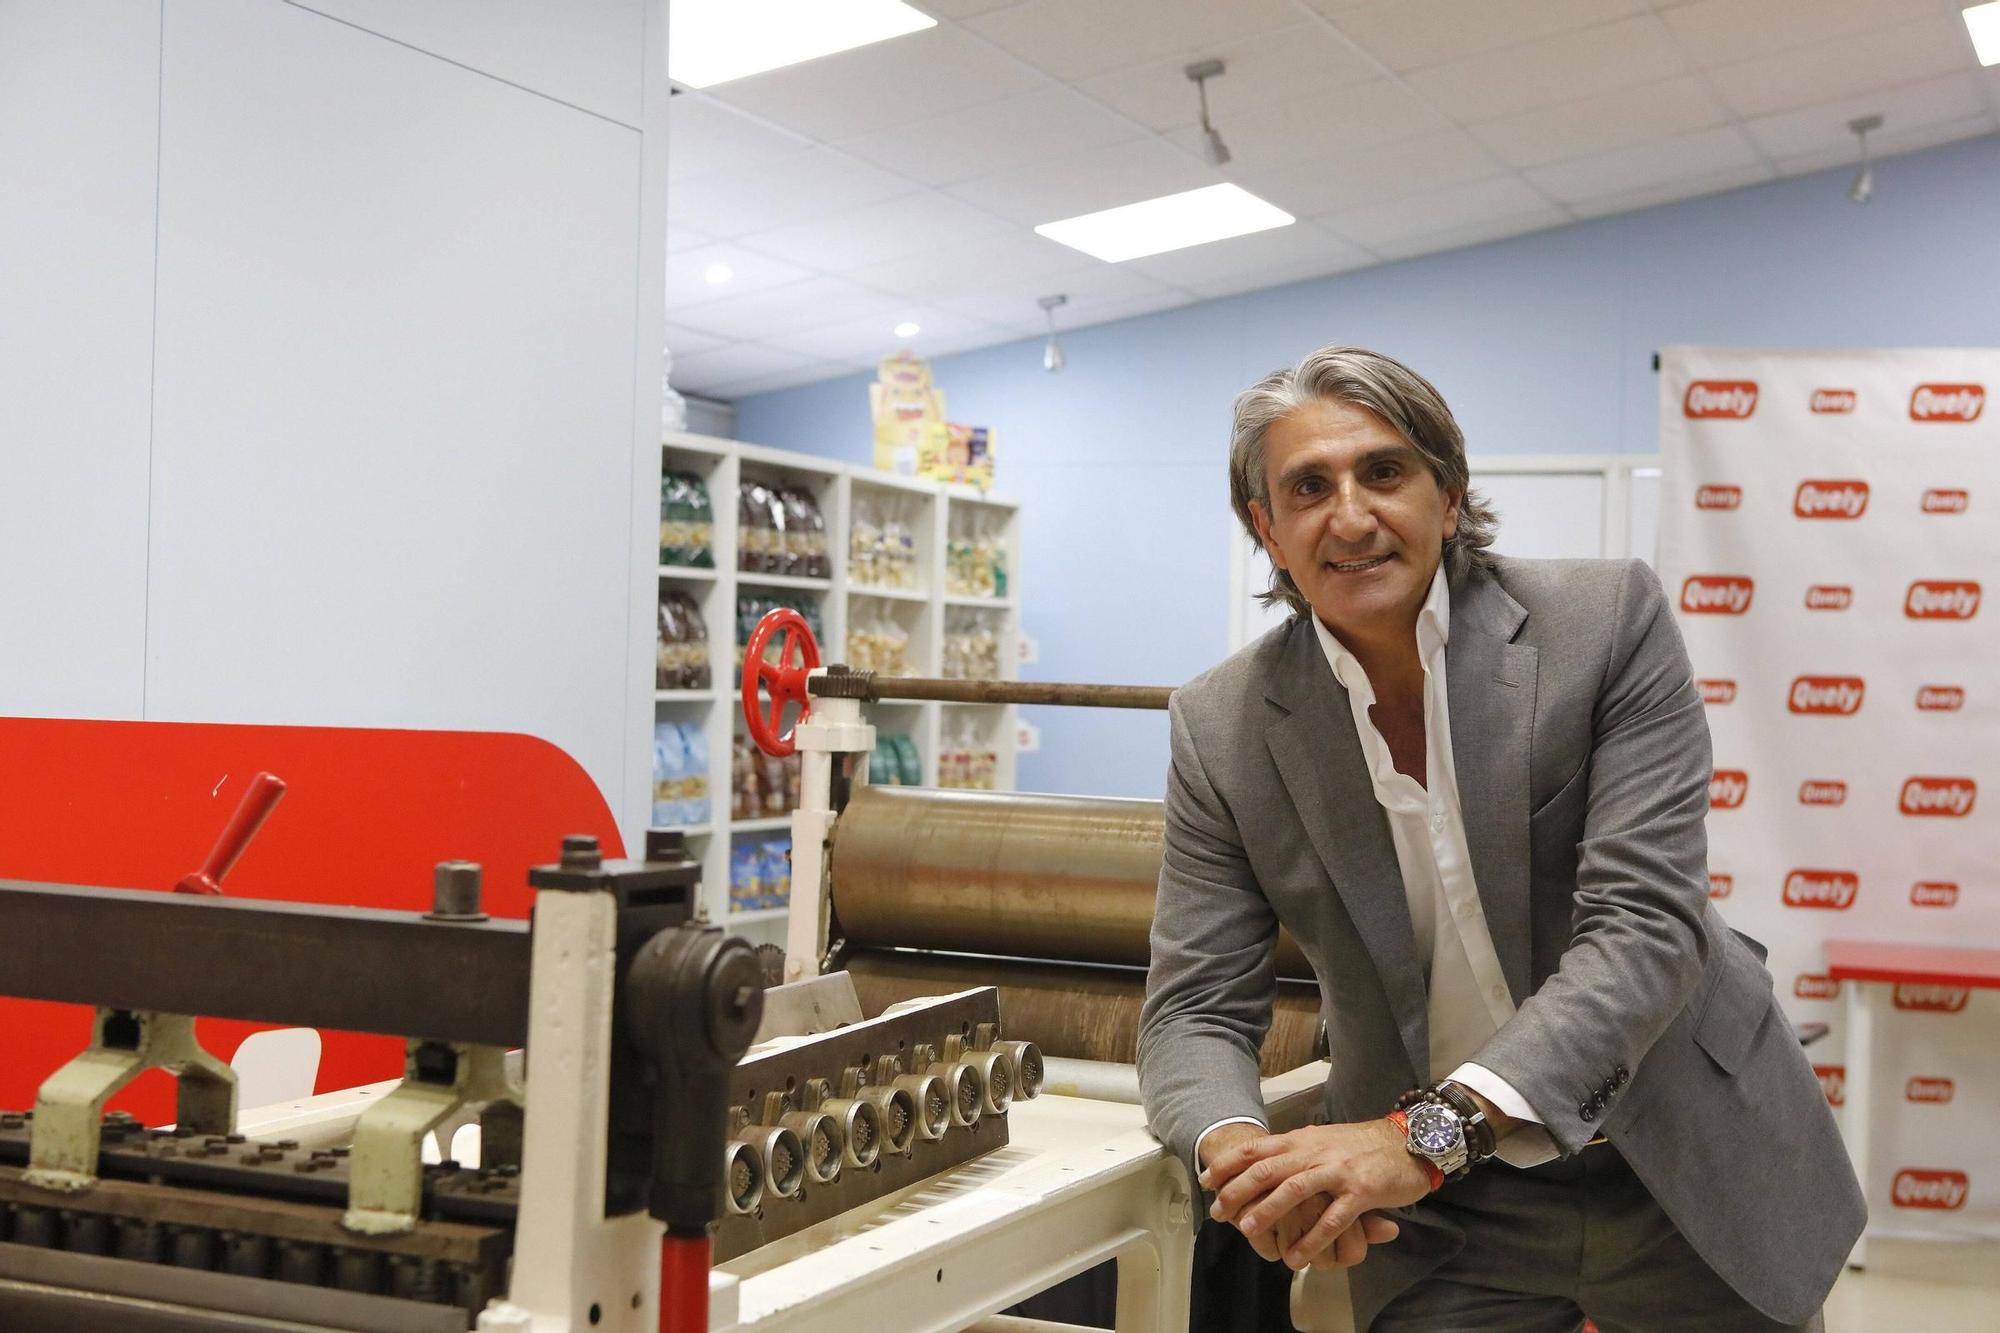 Gabriel Coll ist der CEO des Keksherstellers. Unten: Neu in der Produktpalette: die &quot;palitos&quot; der Maria-Kekse.